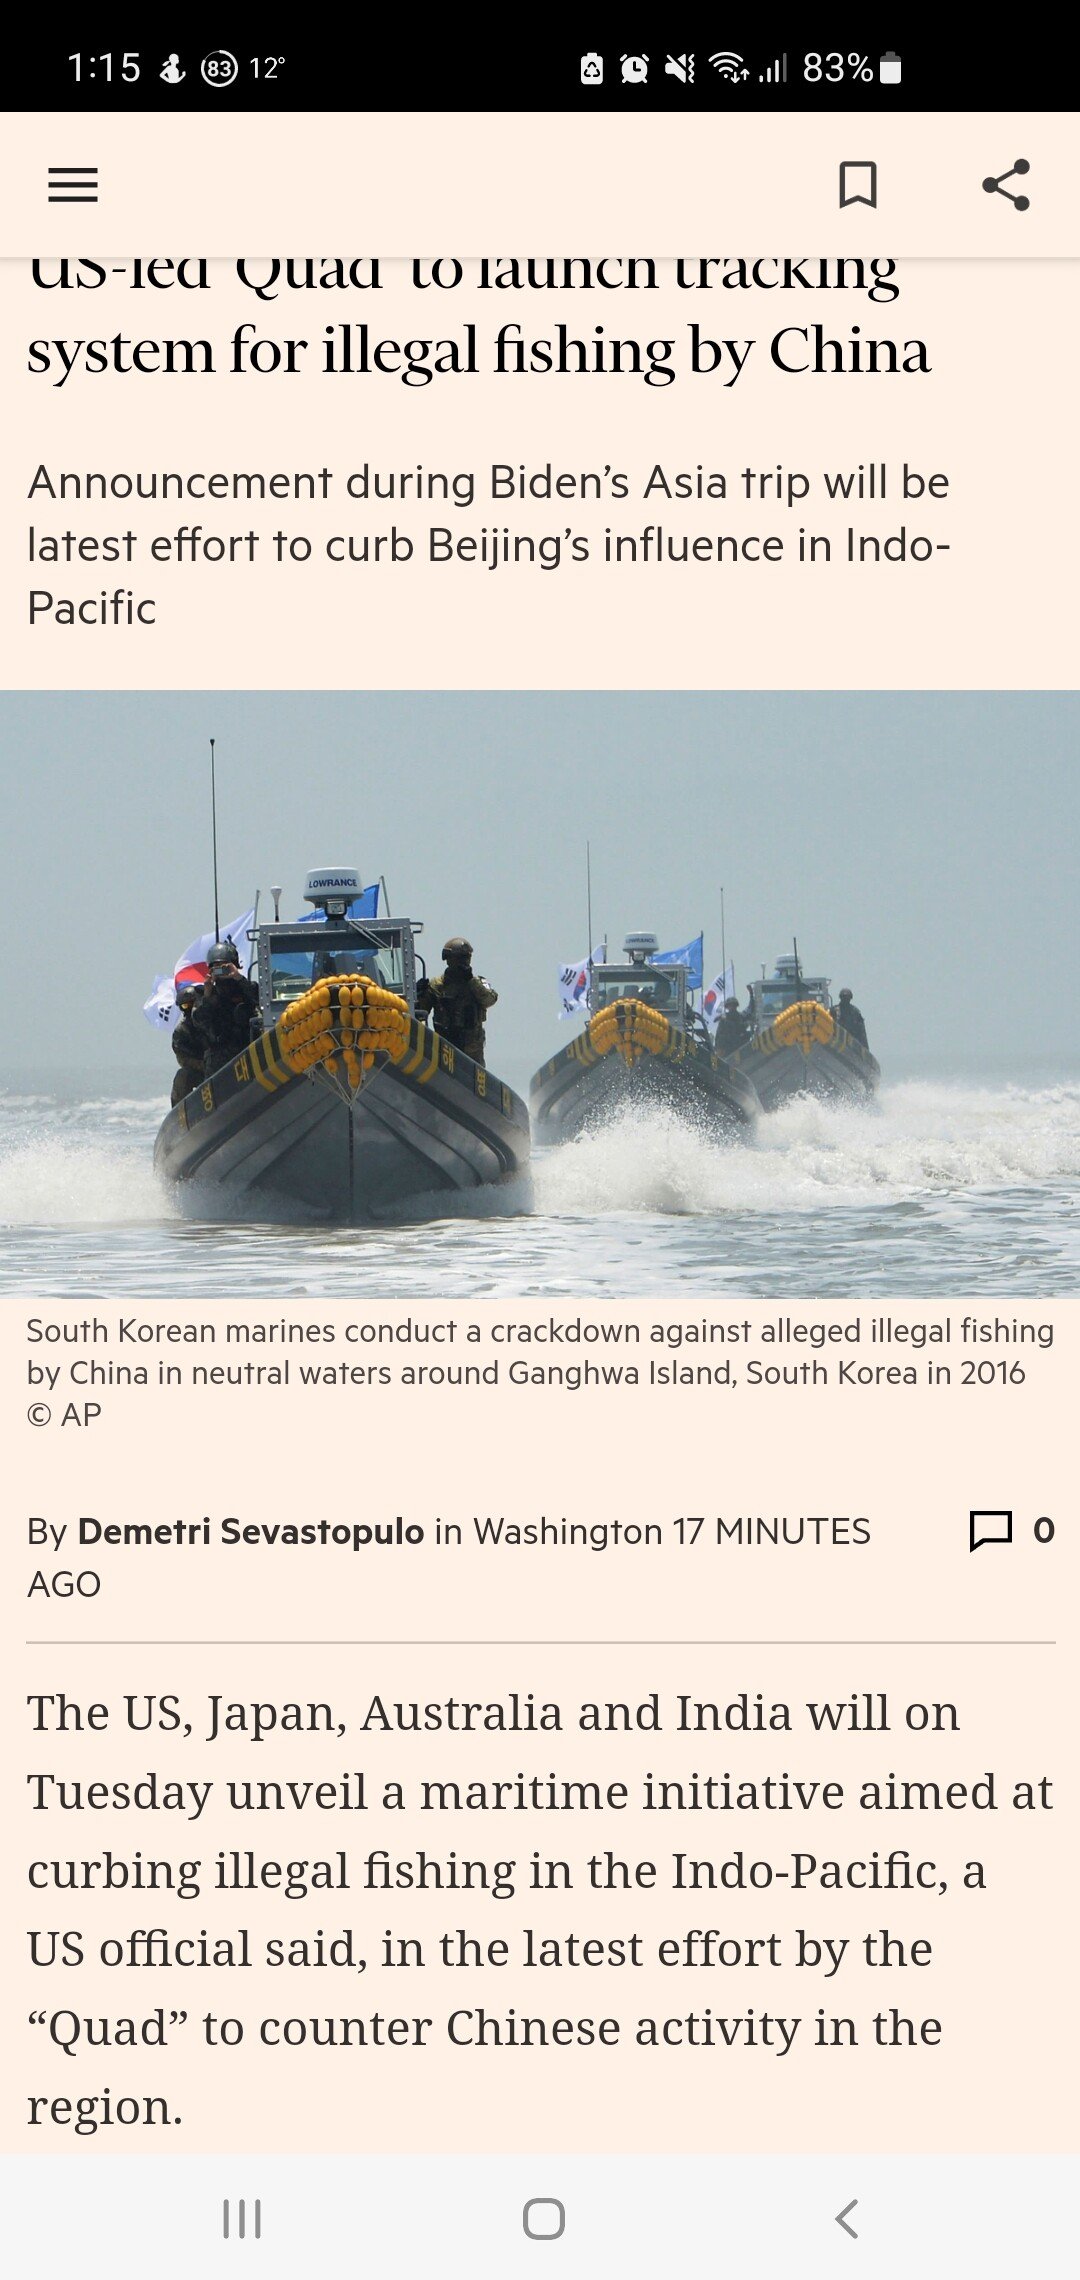 米国が主導するクアッドが中国の違法漁業を監視する予定